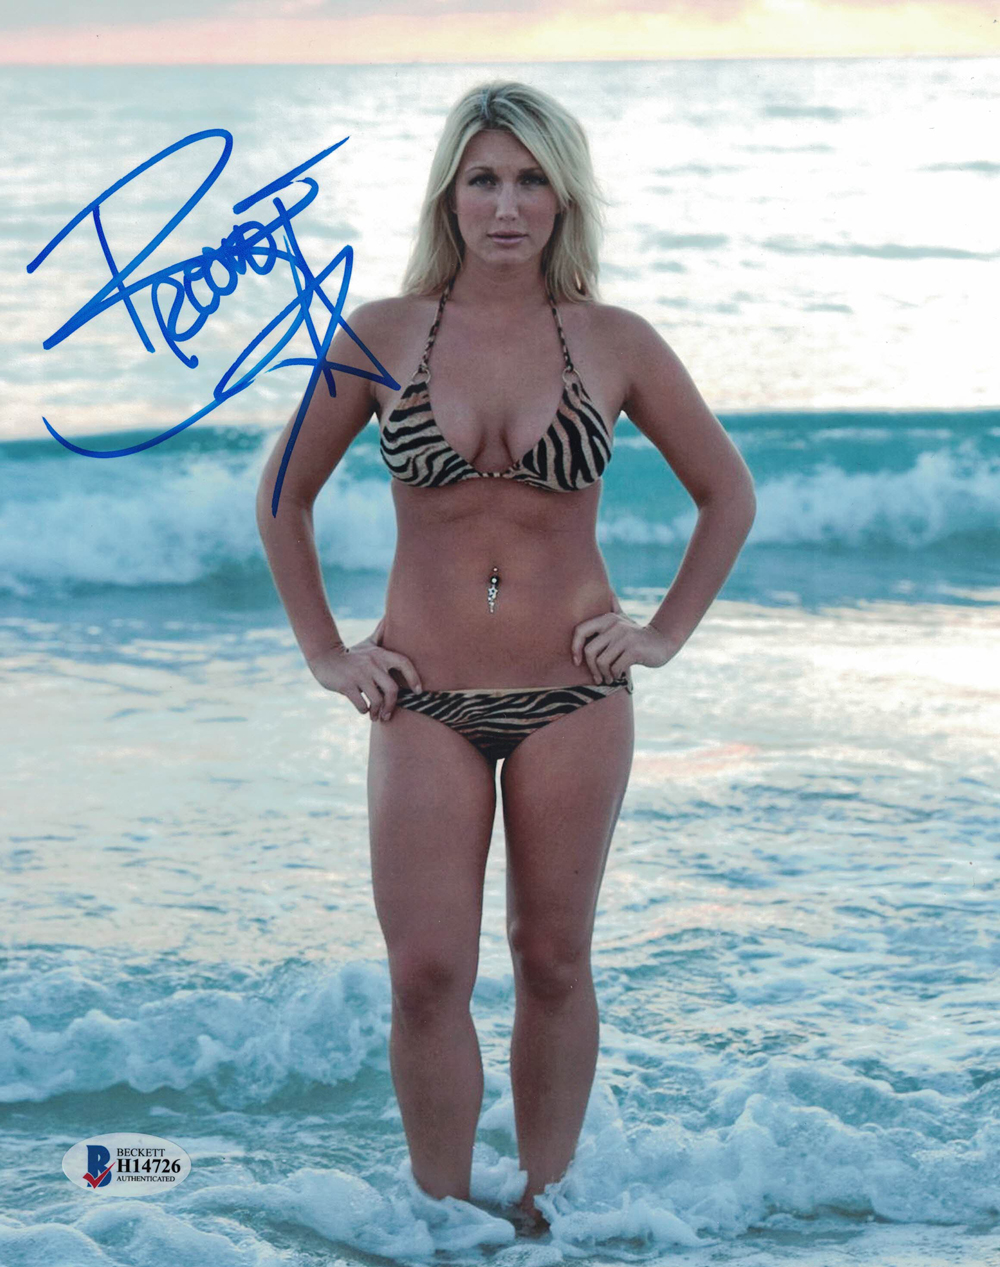 Brooke Hogan Autographed/Signed 8x10 Photo BAS 24327